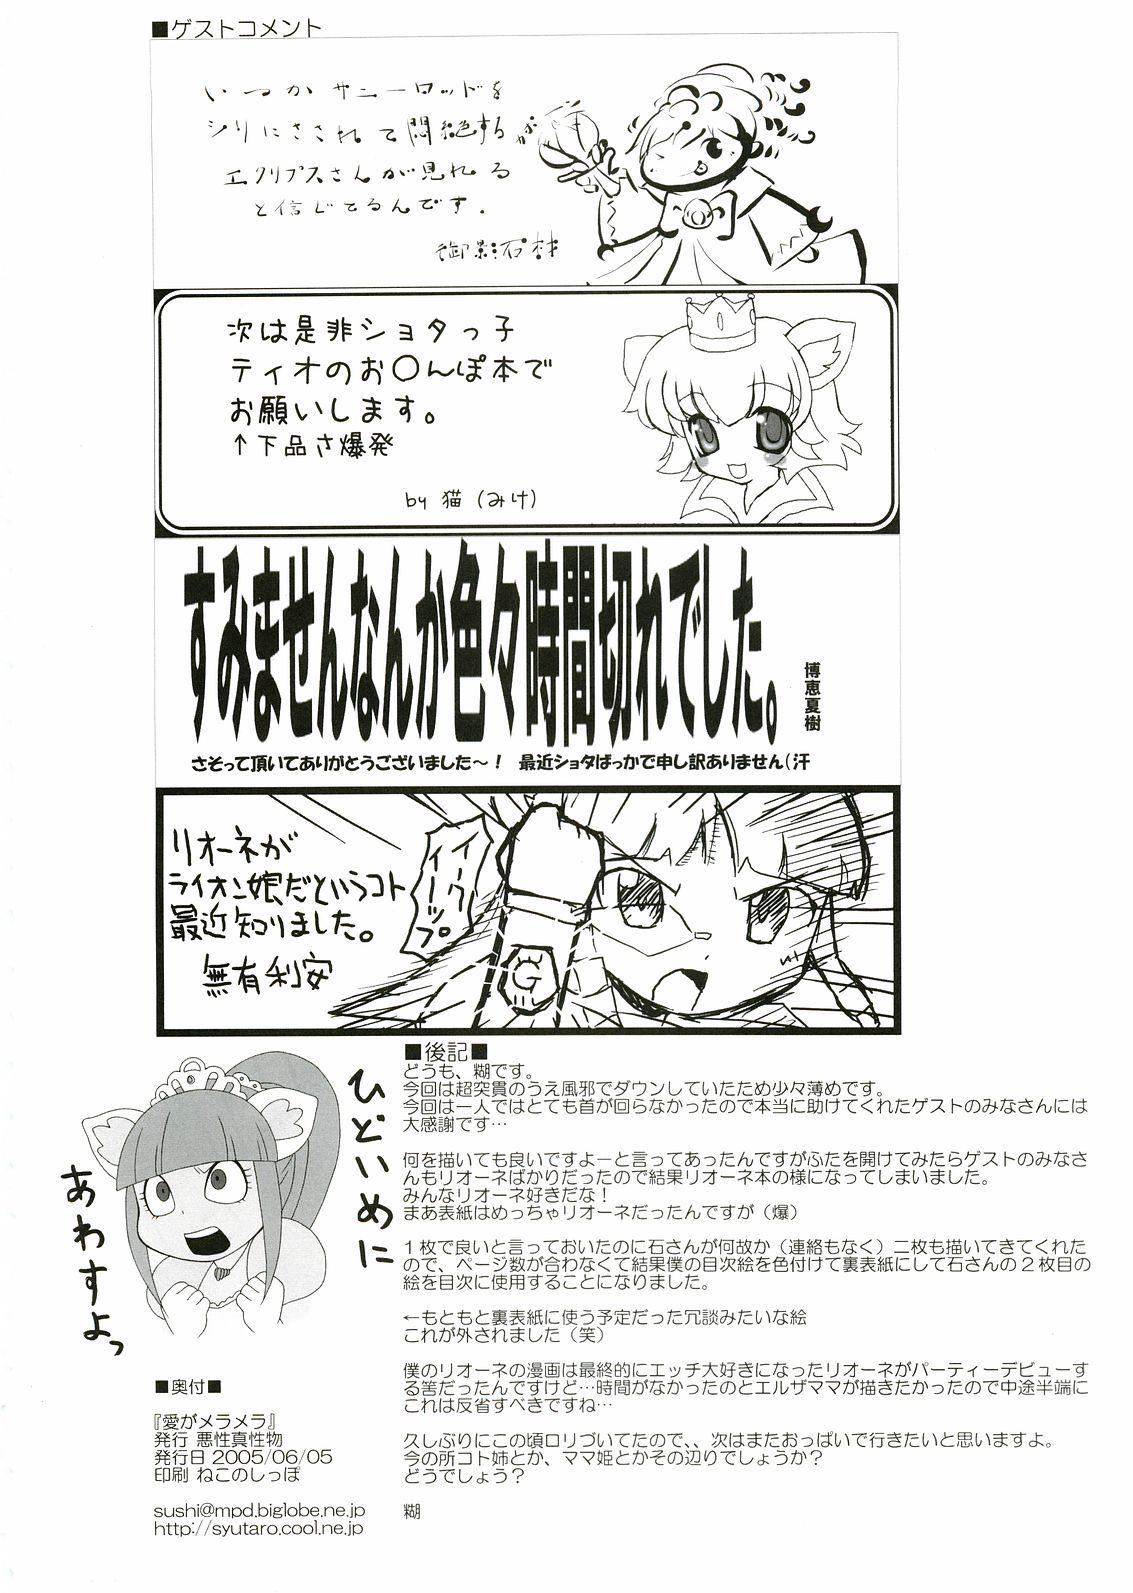 Twerking Ai ga Meramera - Fushigiboshi no futagohime Massage Creep - Page 17